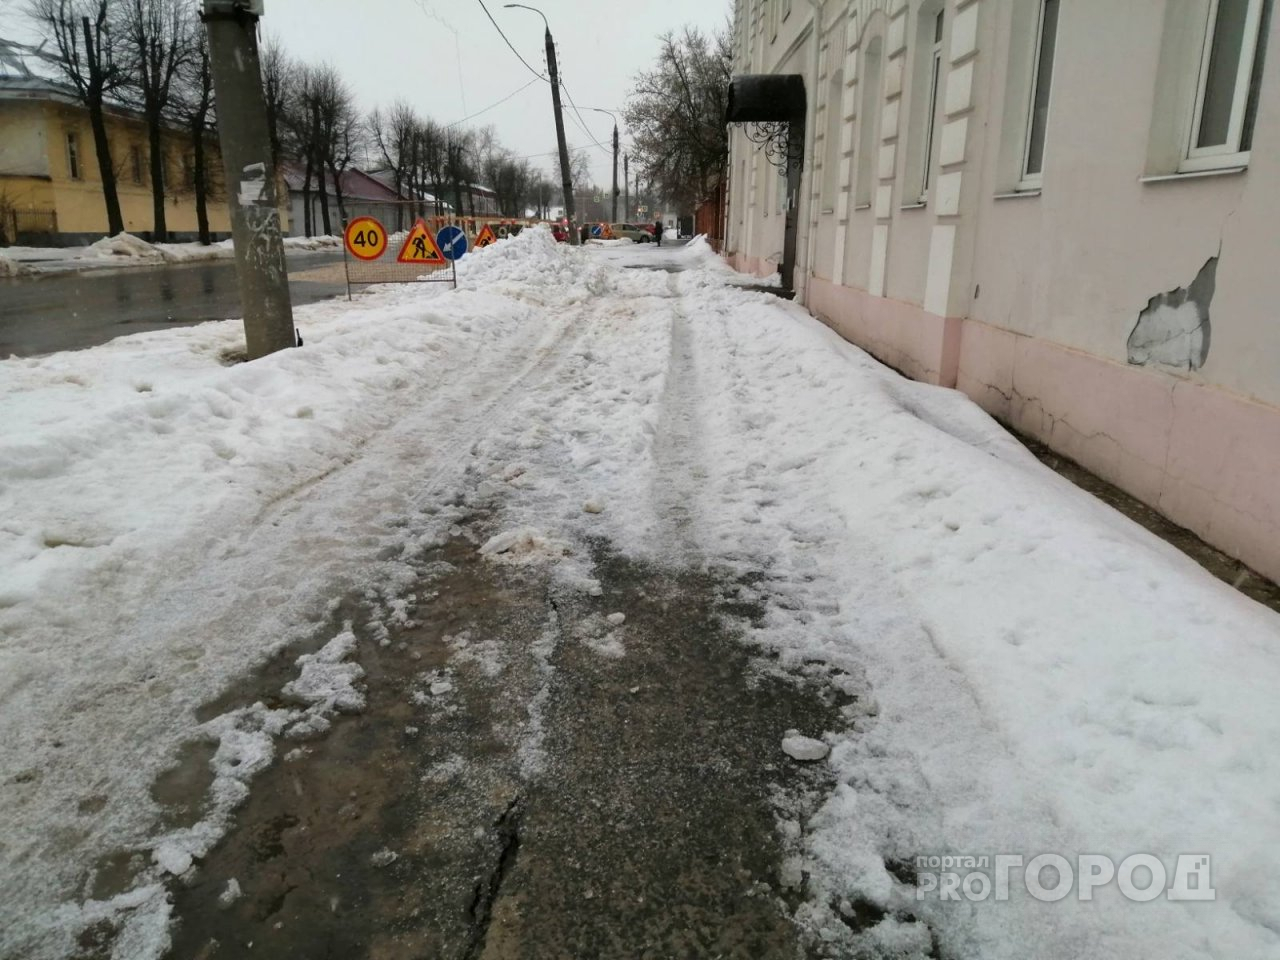 Во Владимире скинули снег с крыши Росреестра и оставили сугробы на тротуаре